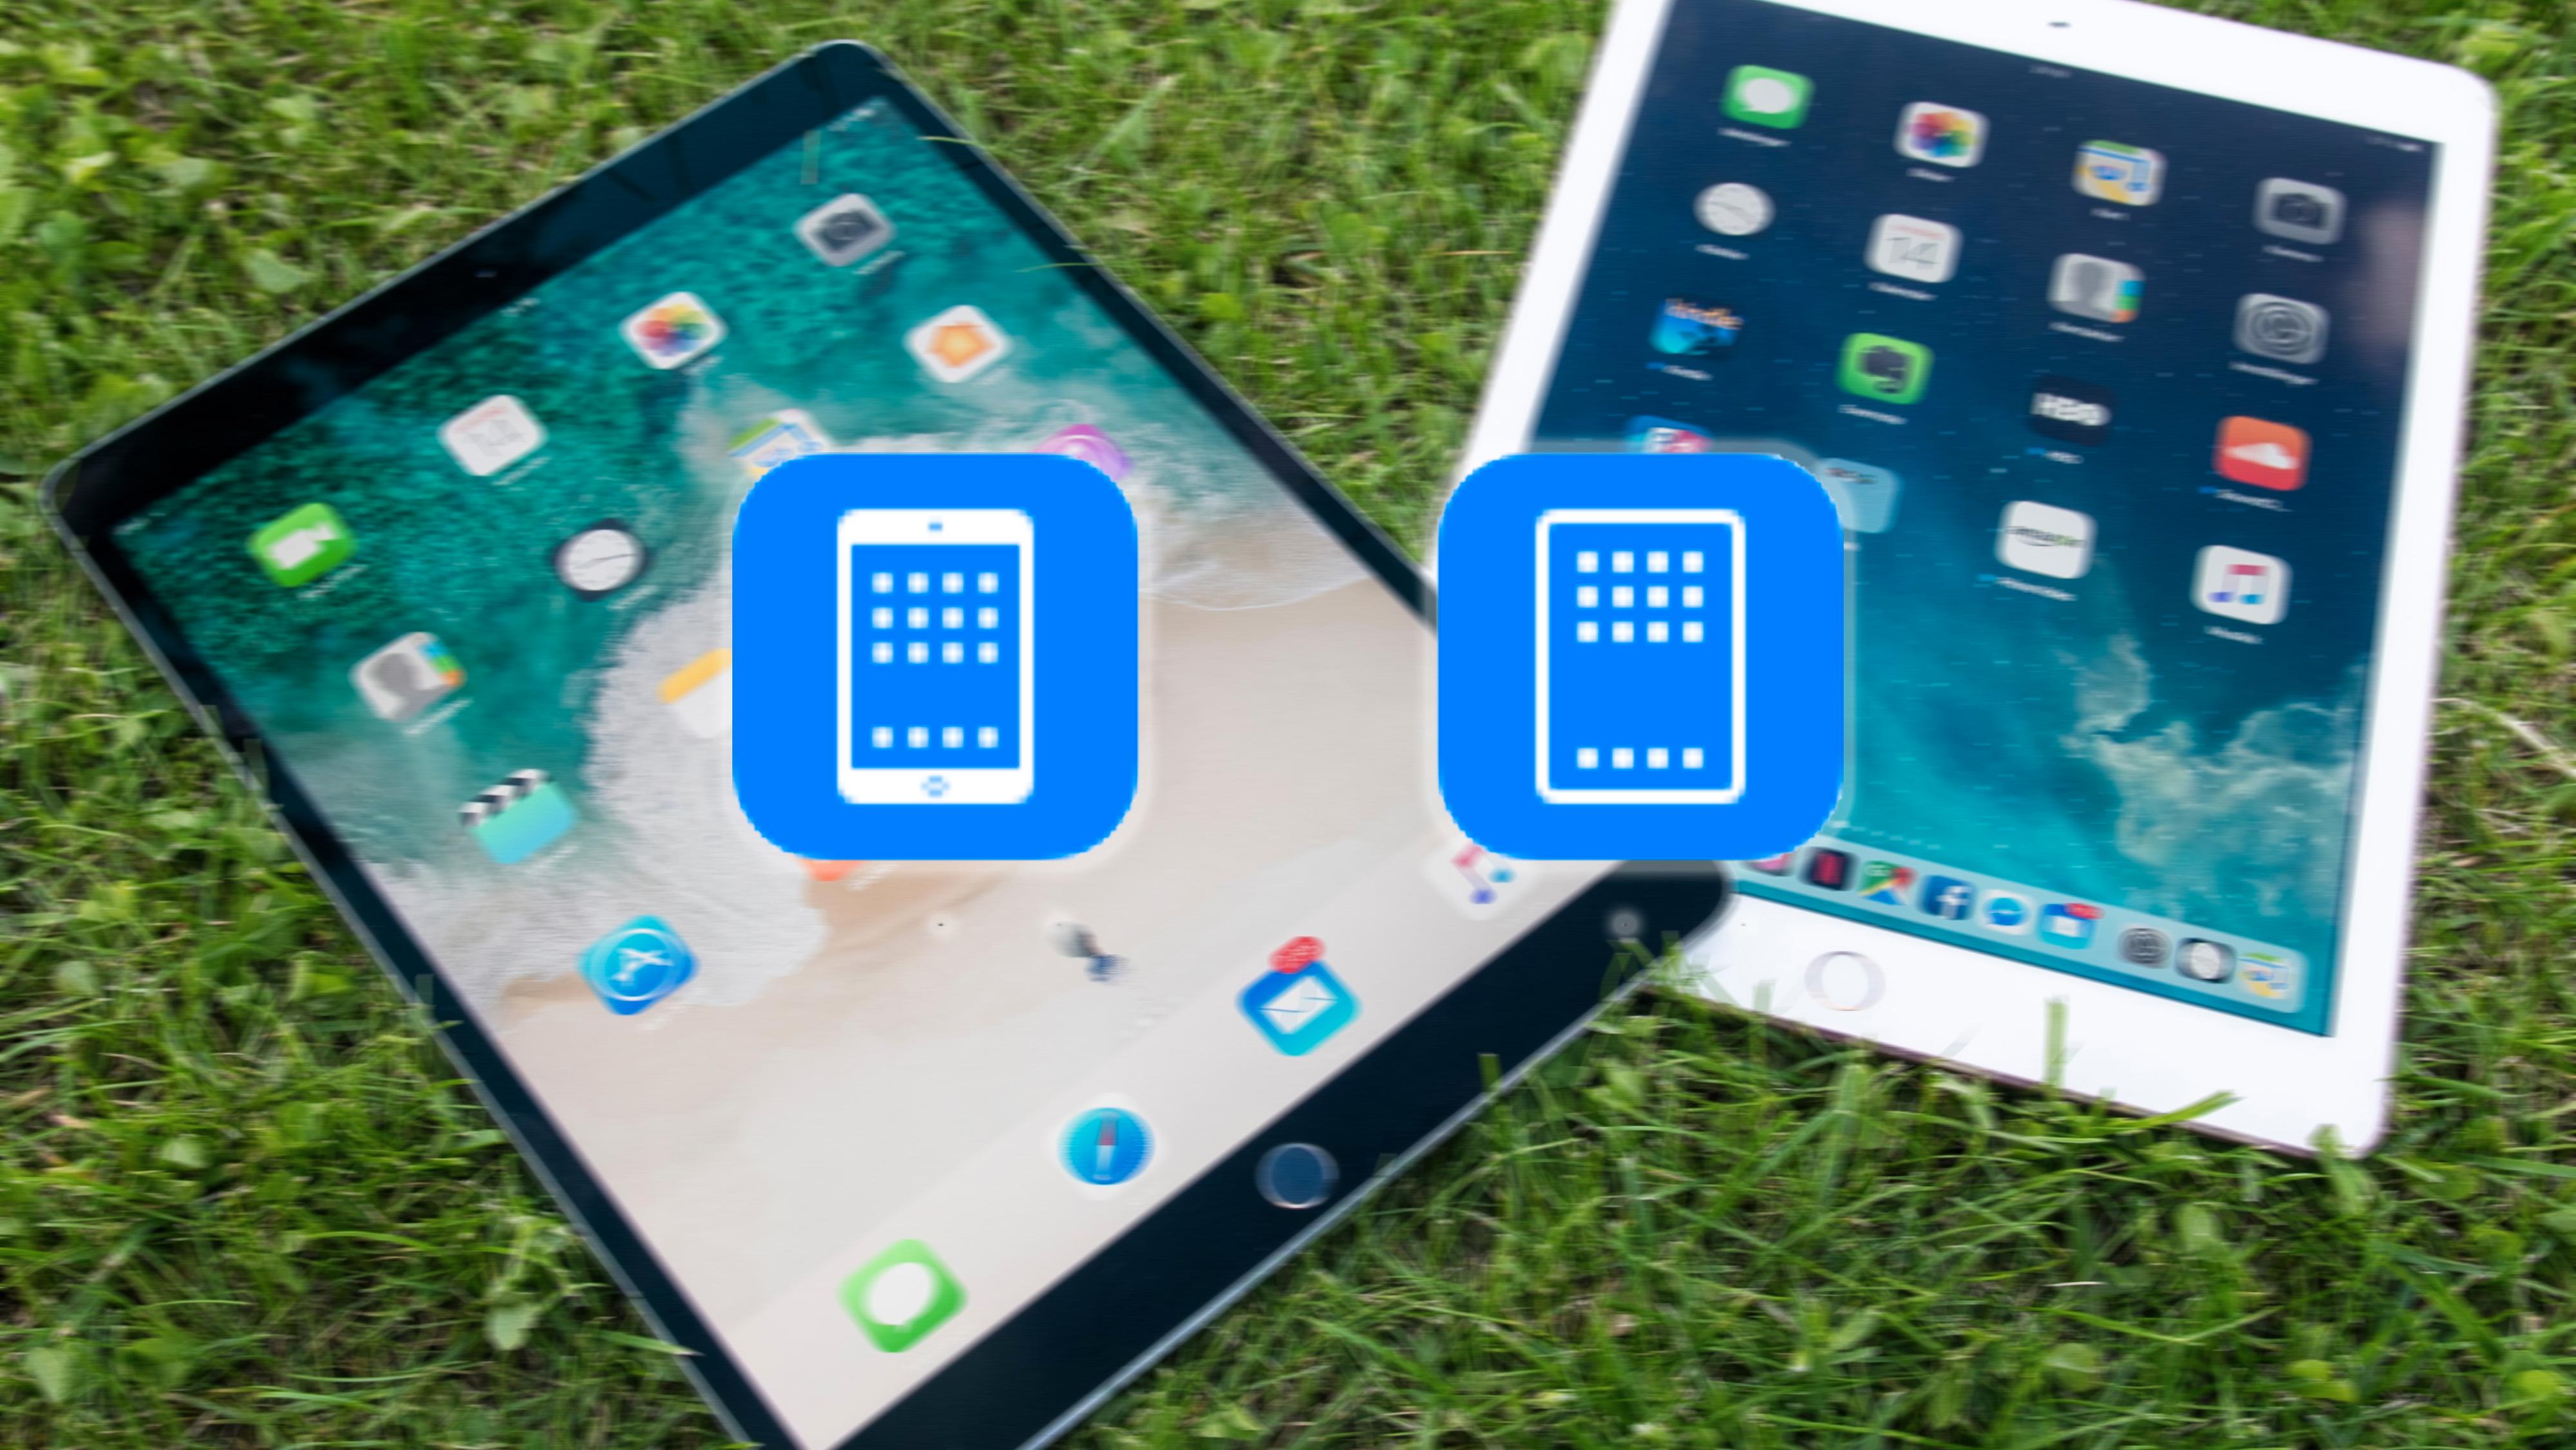 Ikonet til høyre dukket opp i en tidligere iOS-versjon. Ikonet til venstre er det nåværende iPad-ikonet.